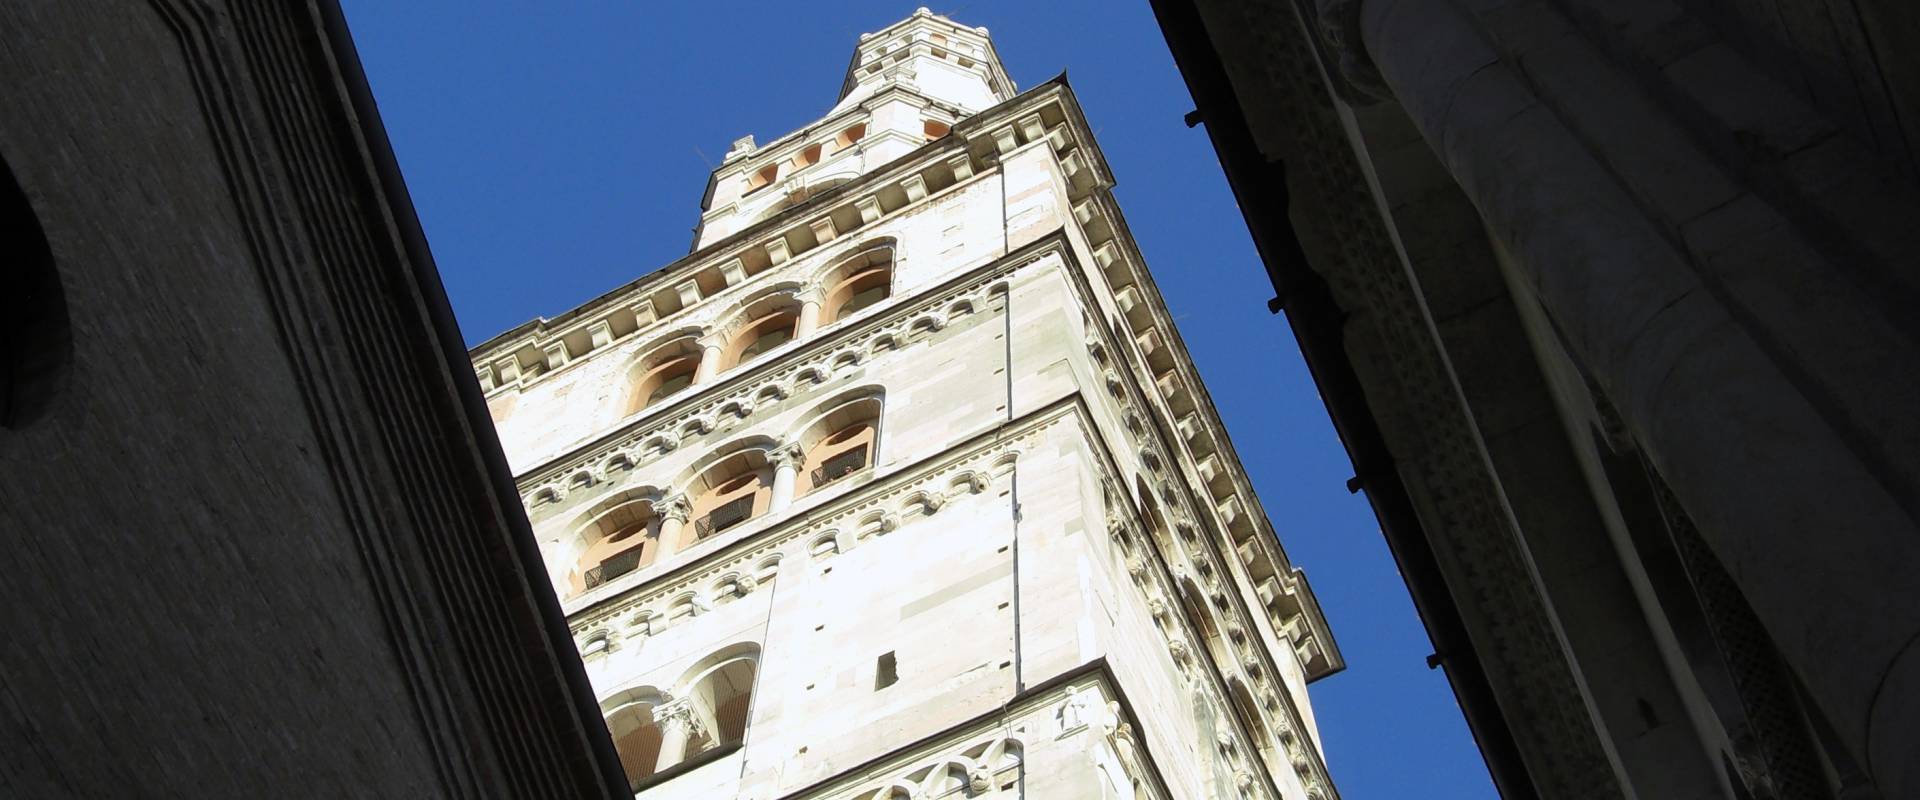 Torre Ghirlandina di Modena dal basso 6 foto di Matteolel